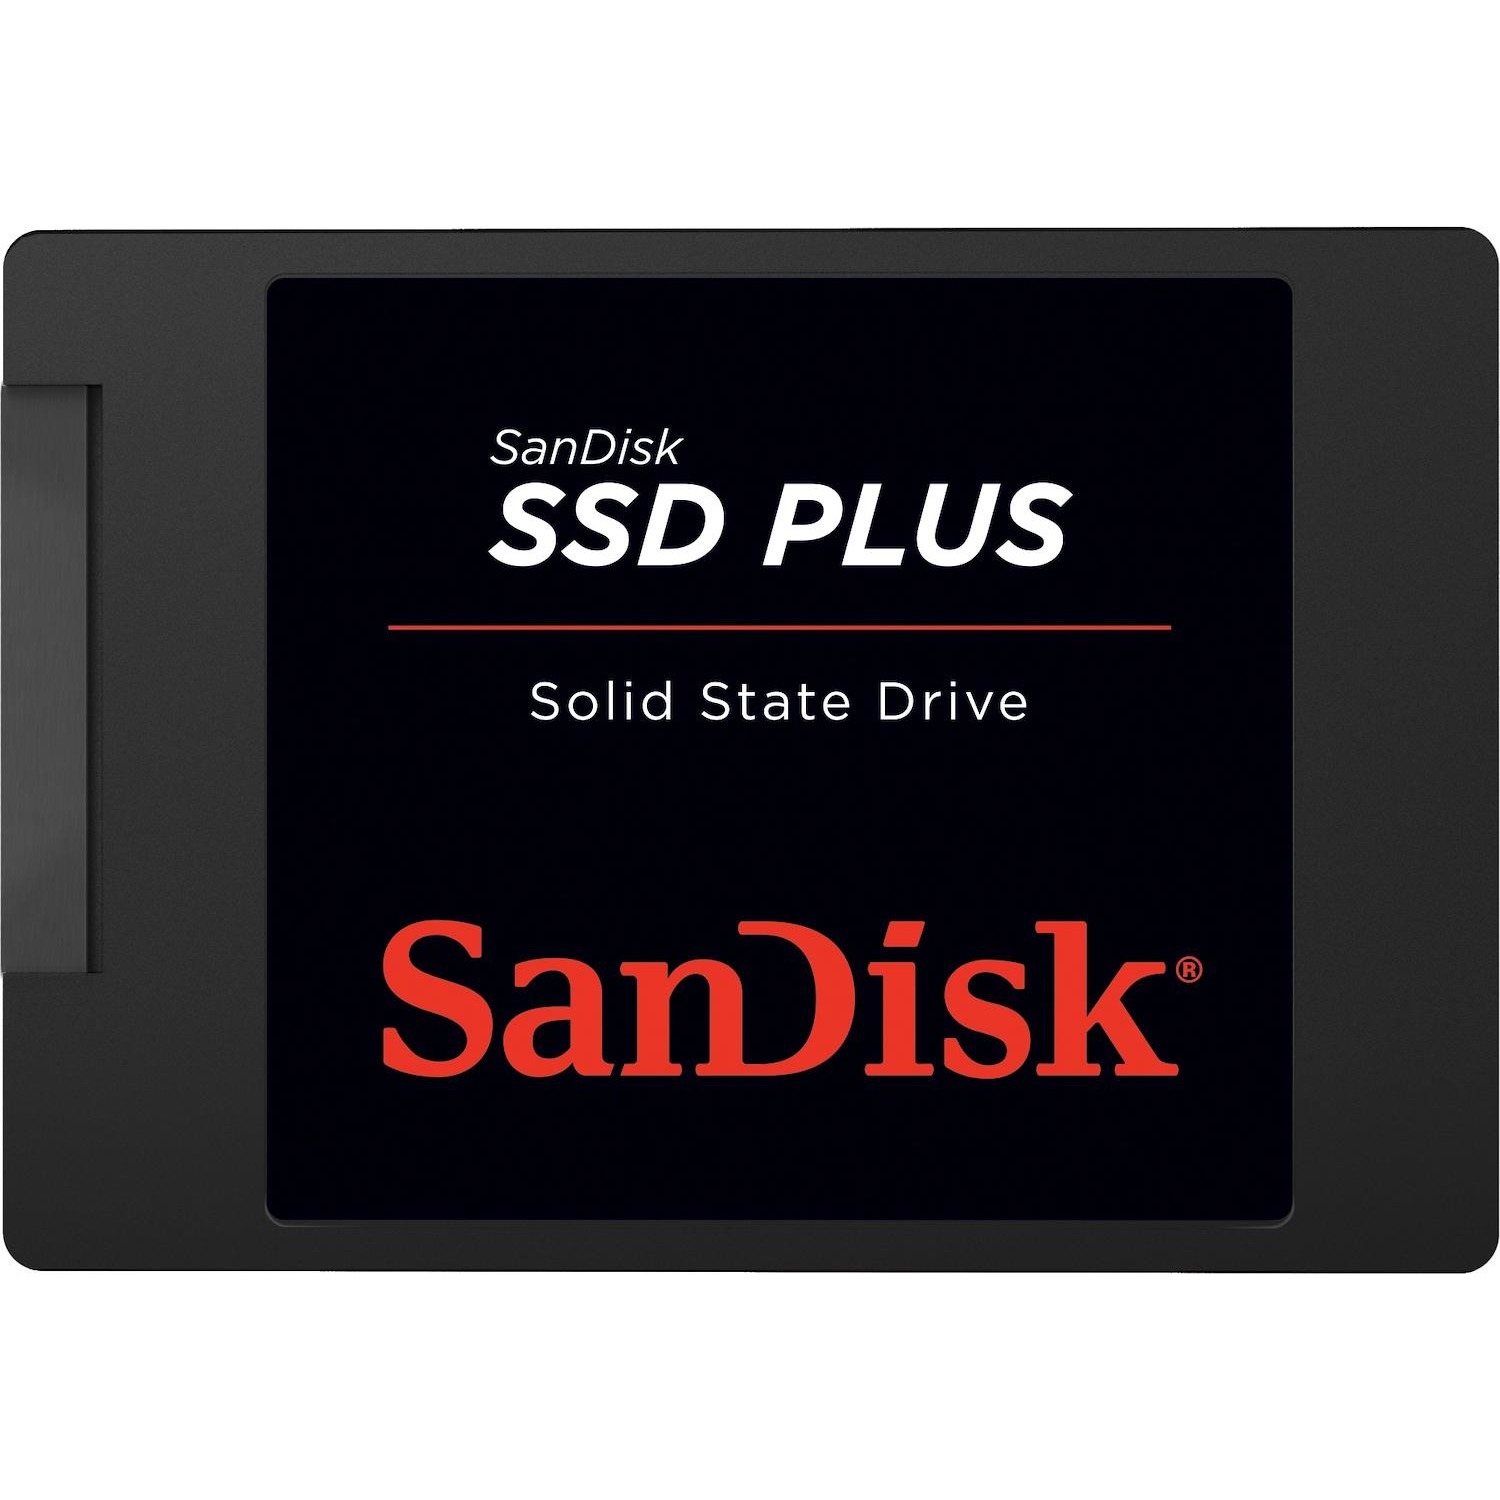 Immagine per HD SSD Sandisk 1TB plus da DIMOStore